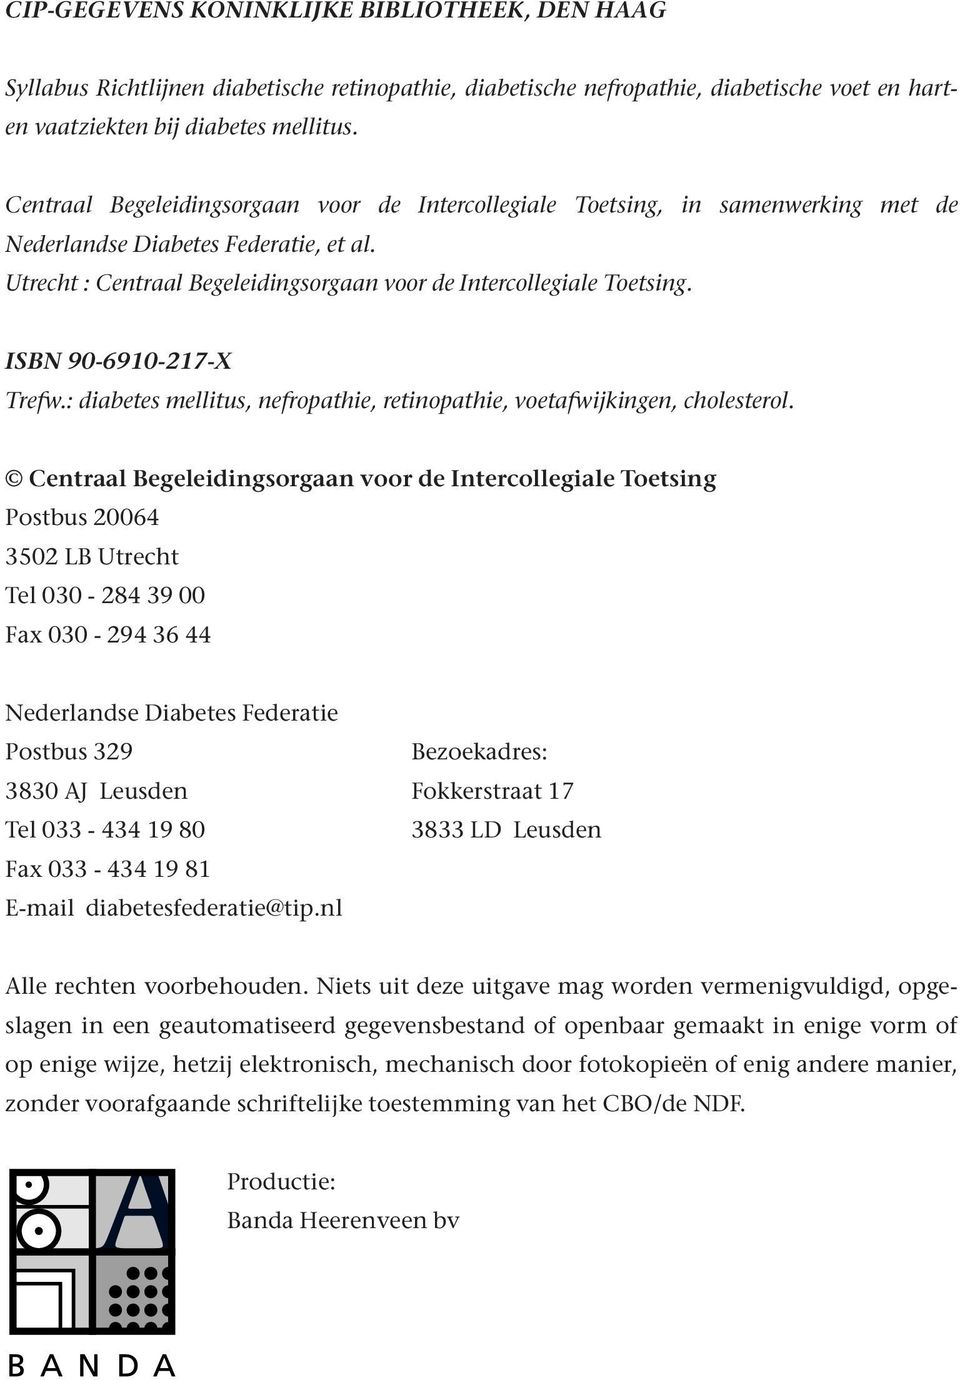 ISBN 90-6910-217-X Trefw.: diabetes mellitus, nefropathie, retinopathie, voetafwijkingen, cholesterol.